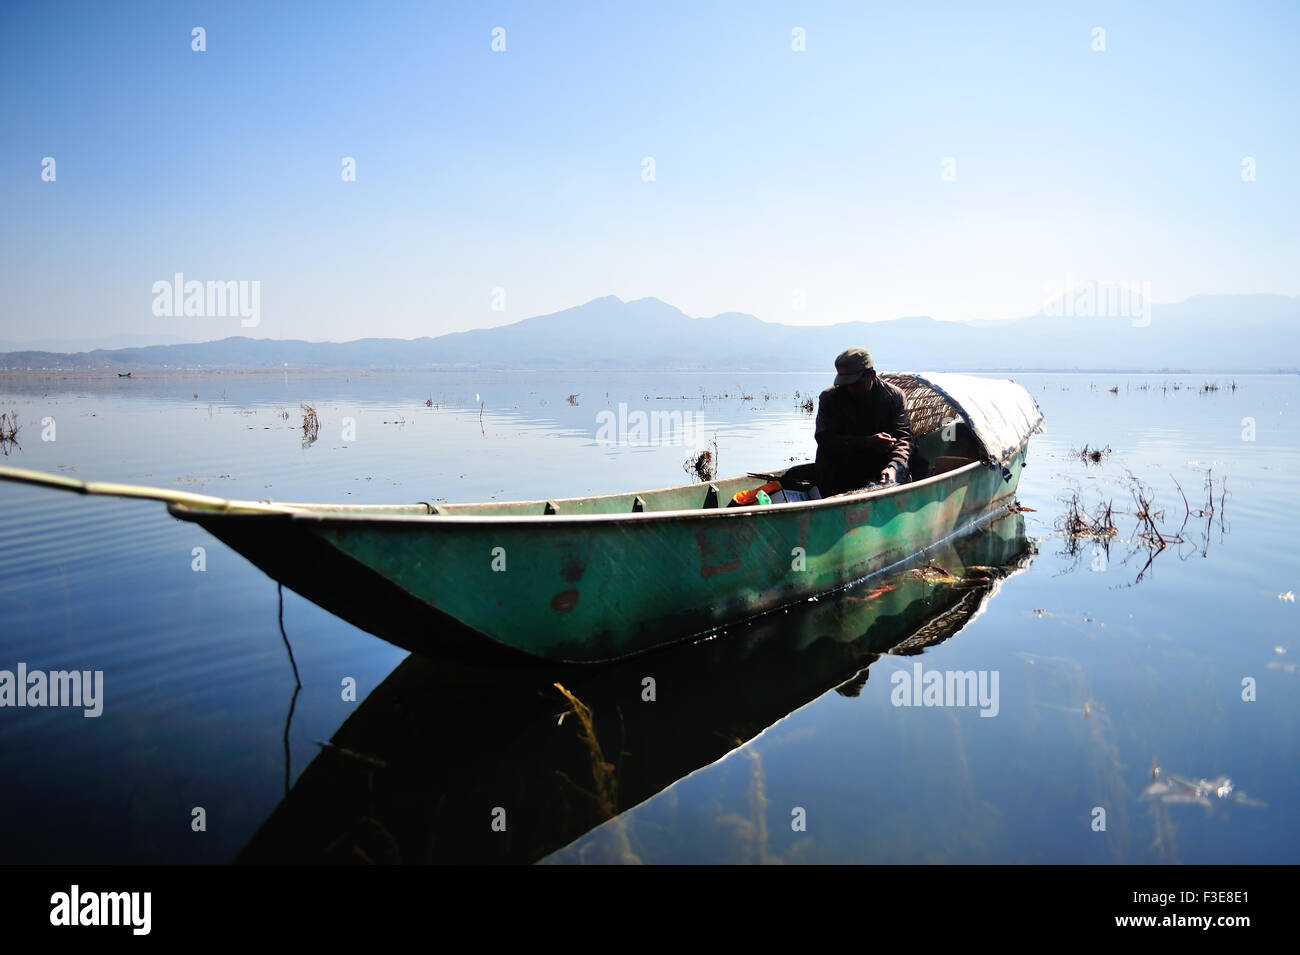 Over LaShiHai a lake in Yunnan Stock Photo